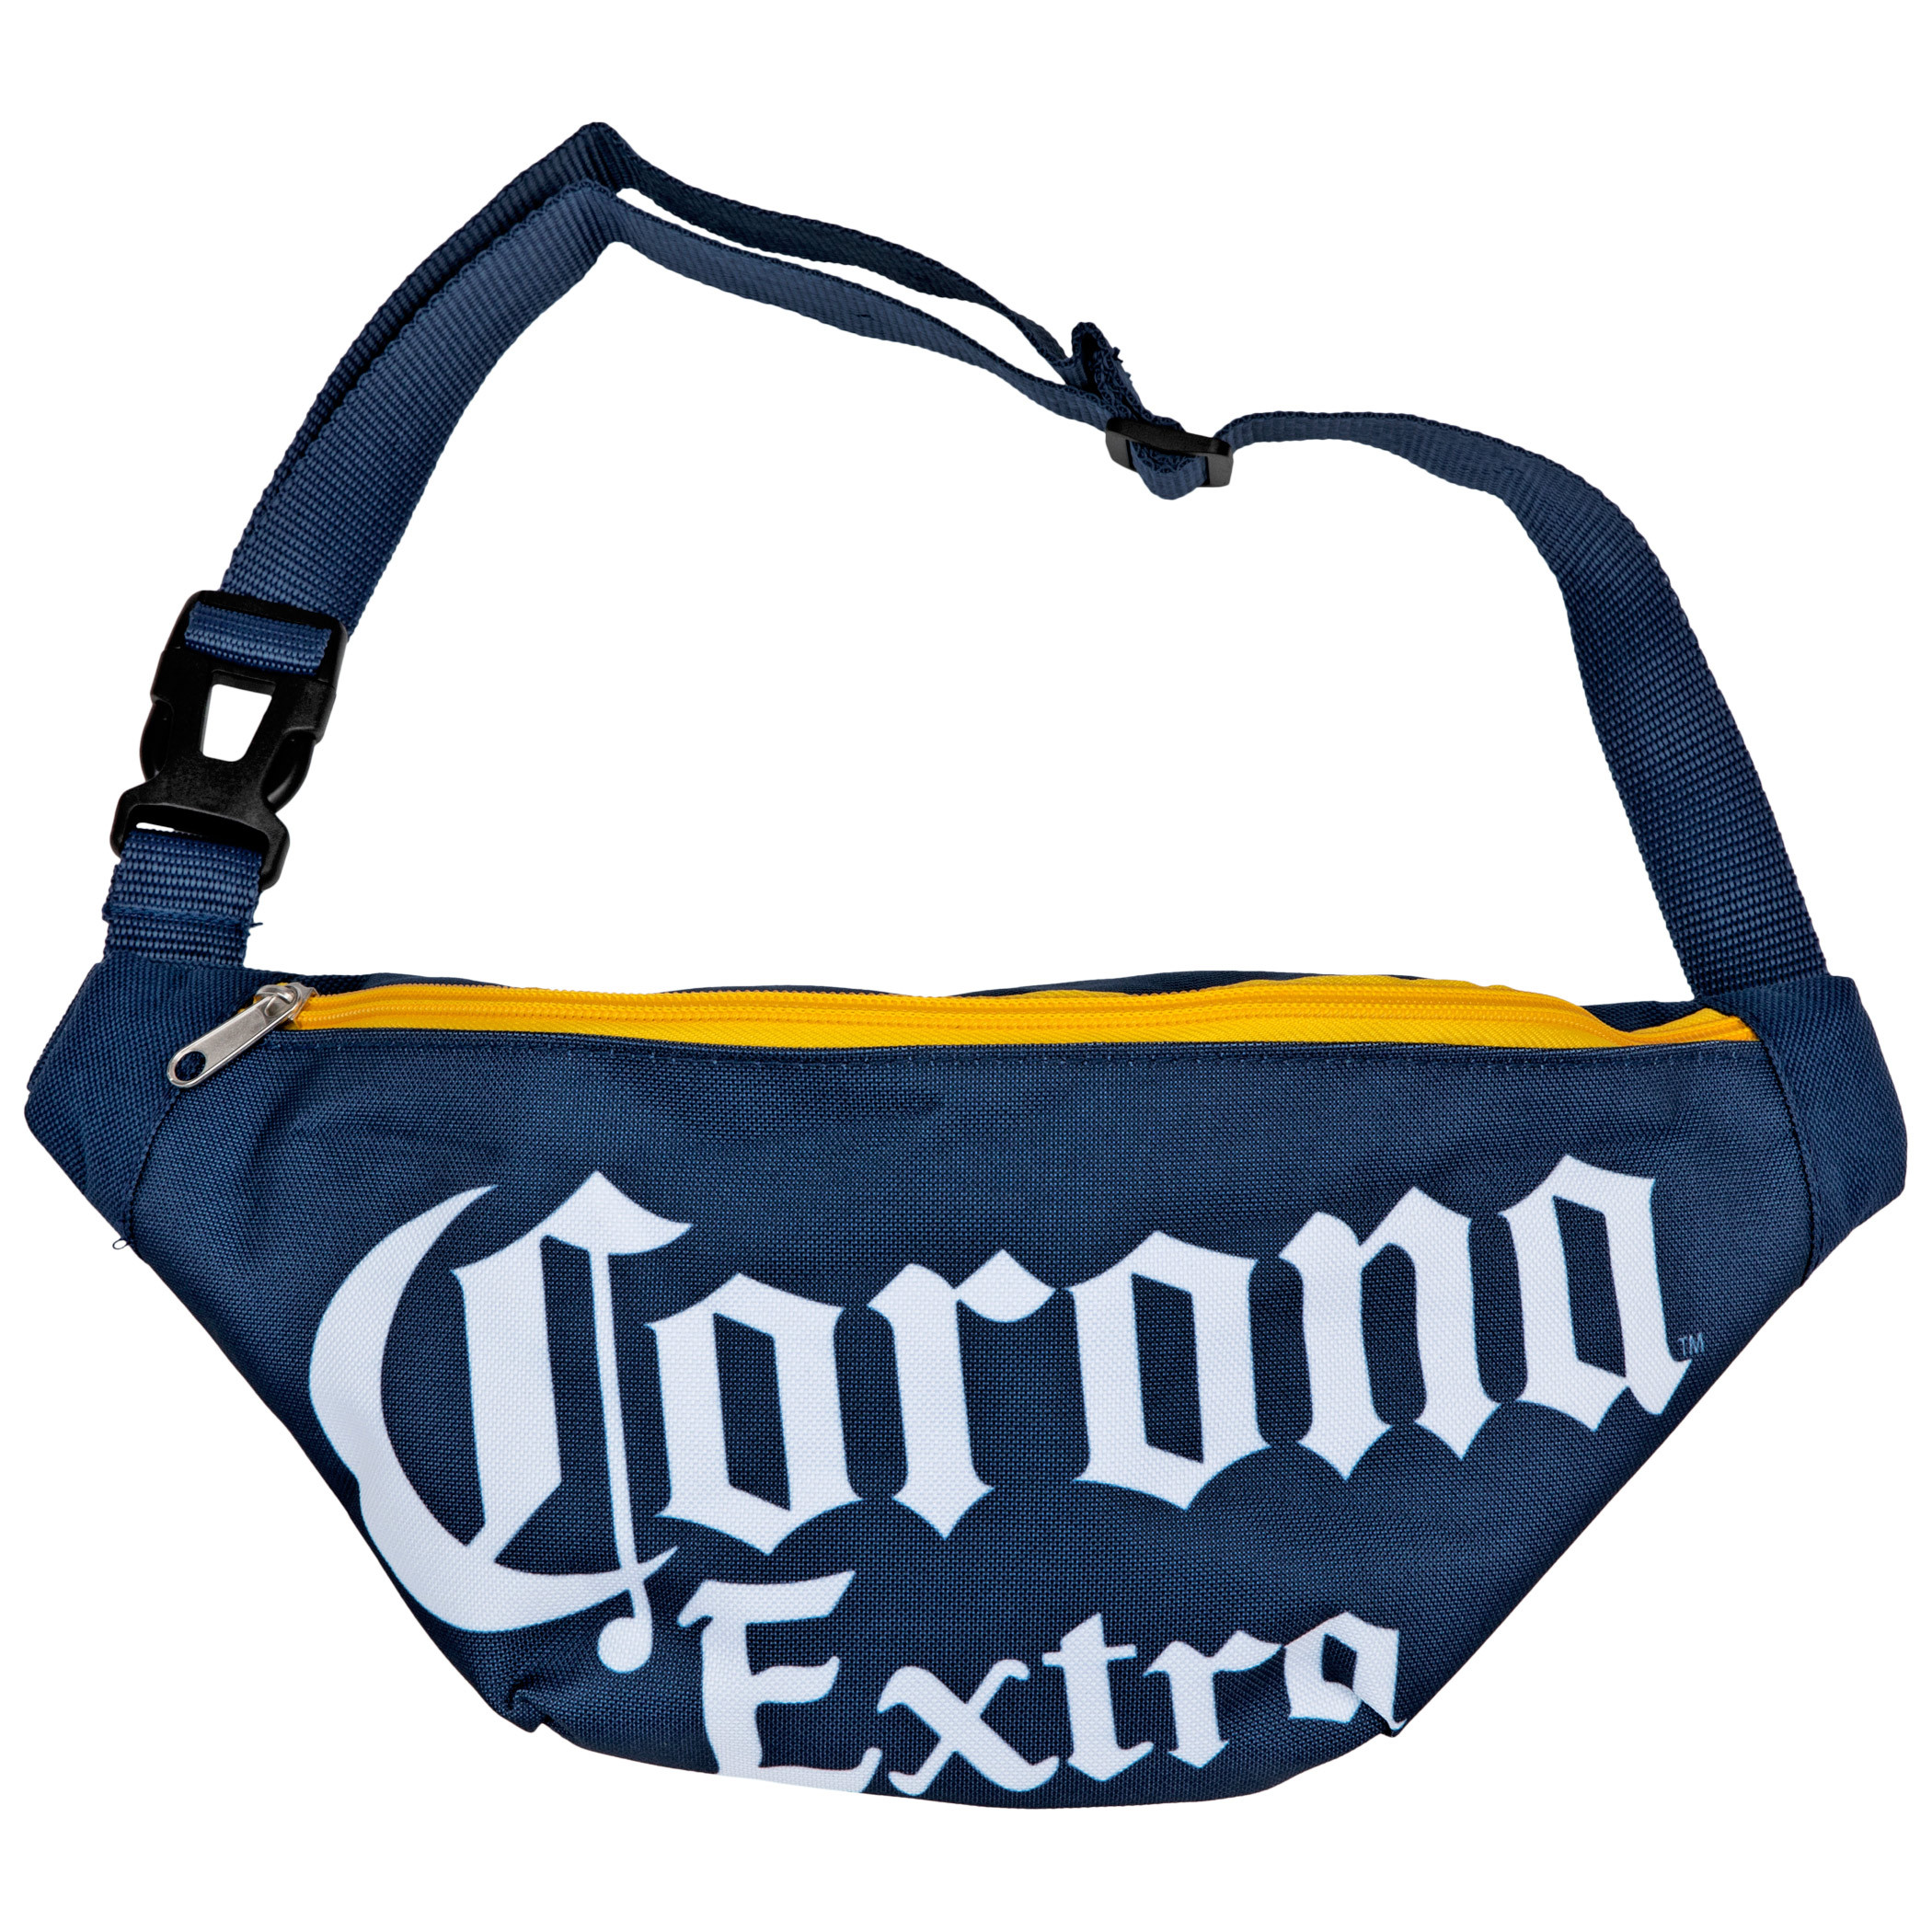 Corona Extra Text Brand Fanny Pack